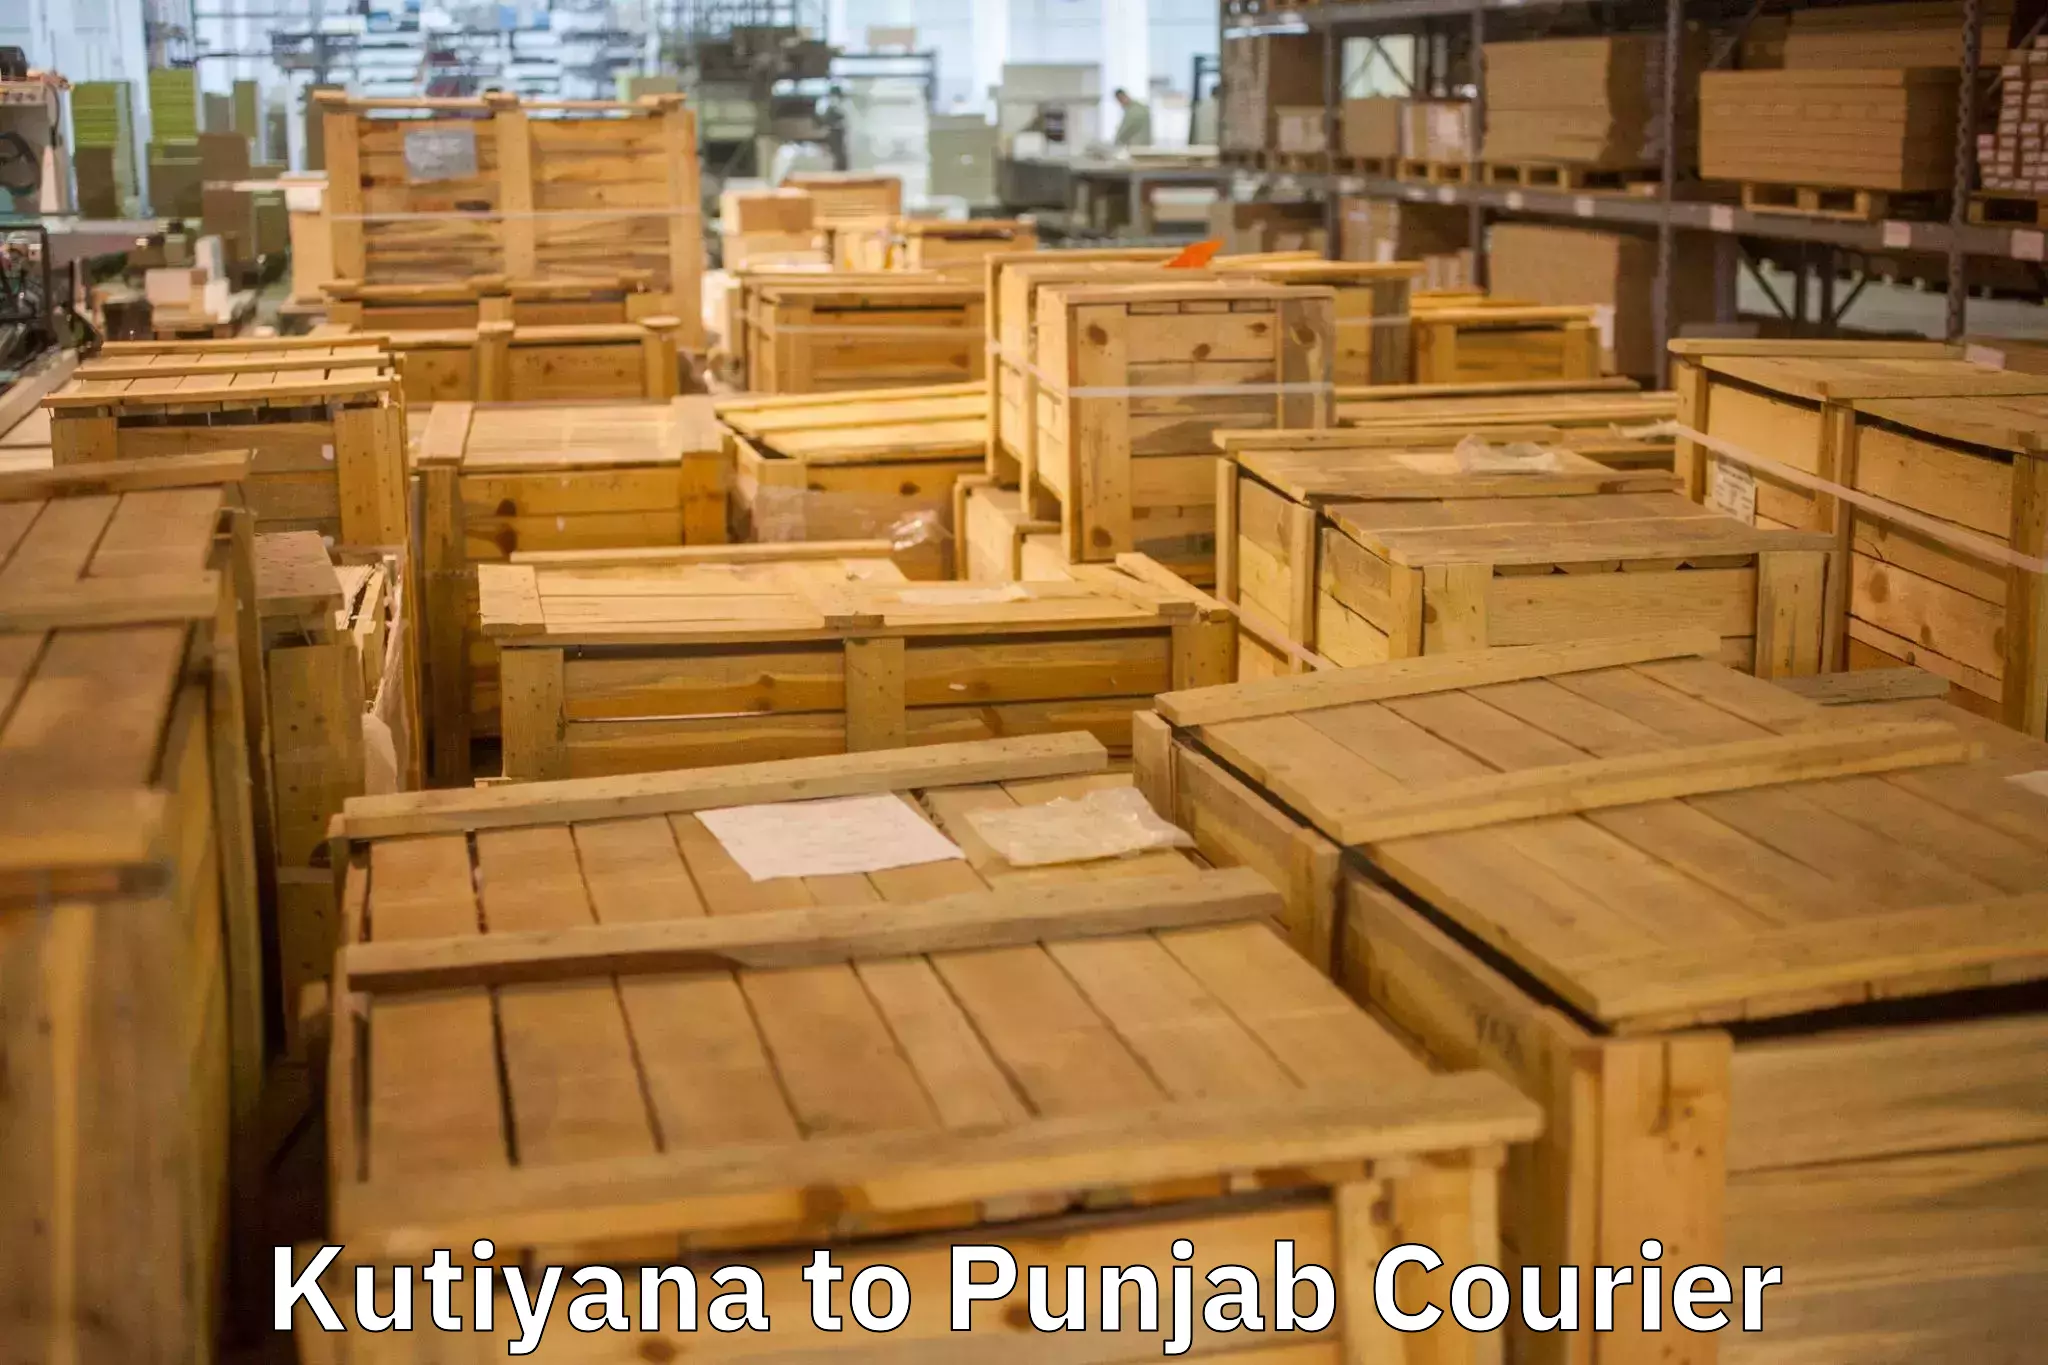 Nationwide furniture movers Kutiyana to Punjab